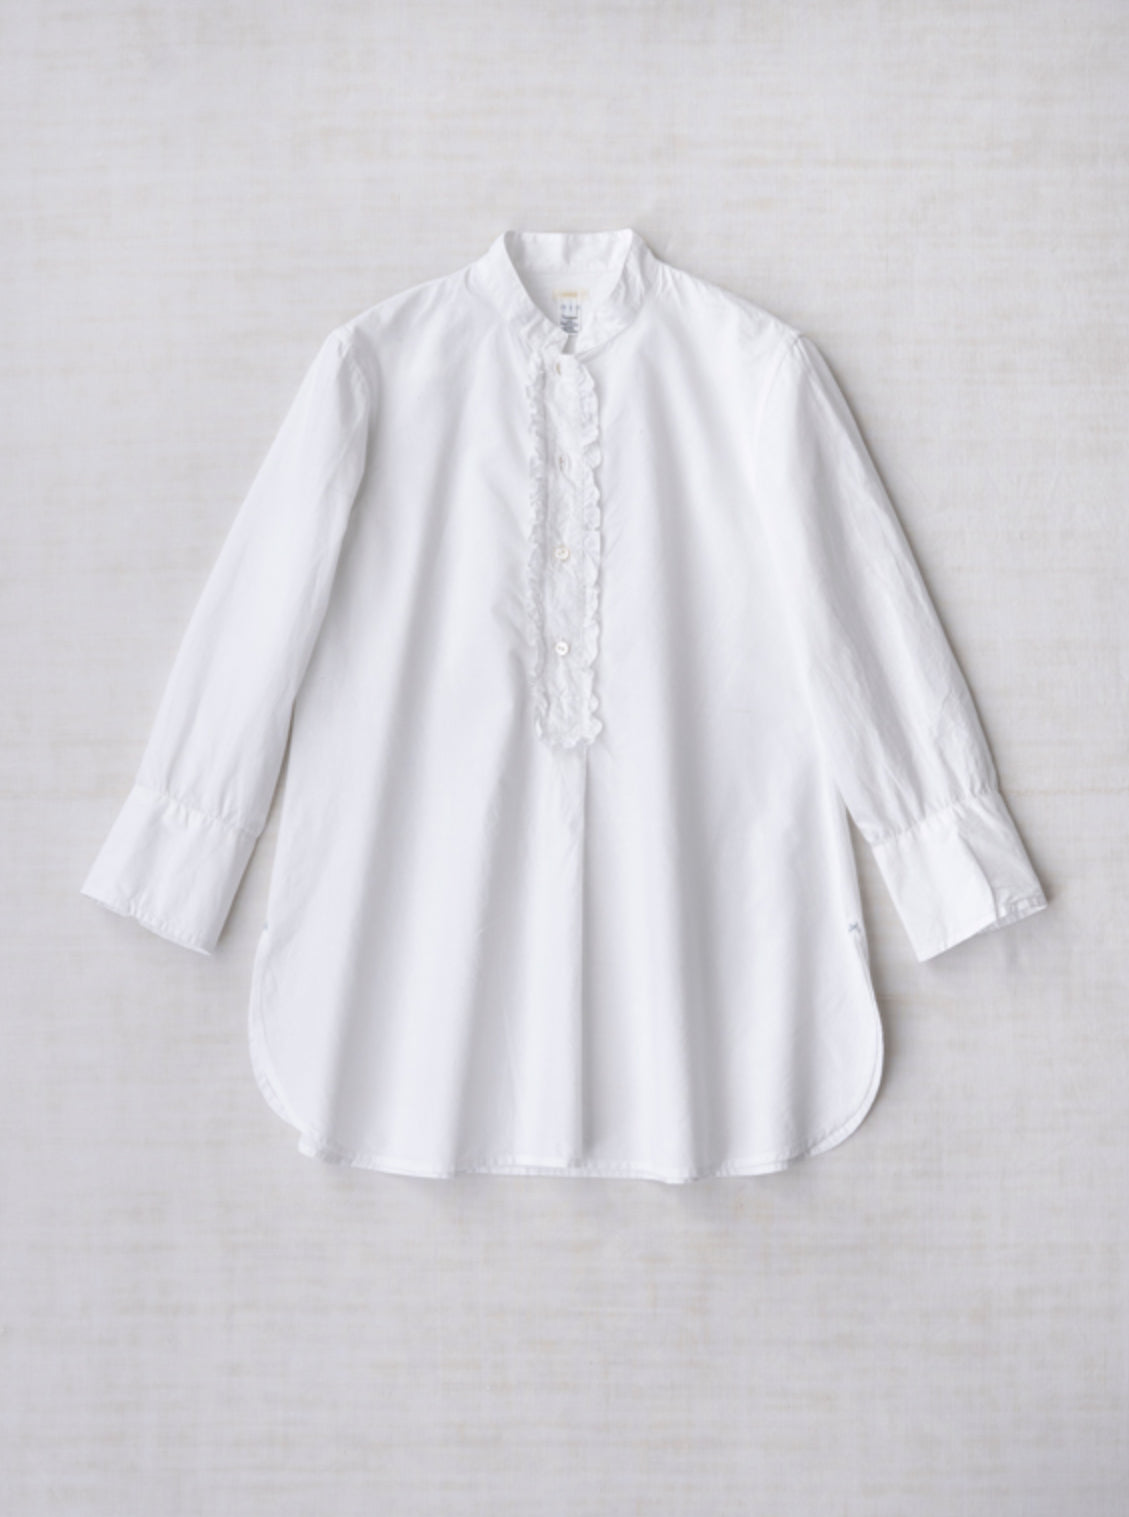 dosa-little-subhash-shirt-white-amarees